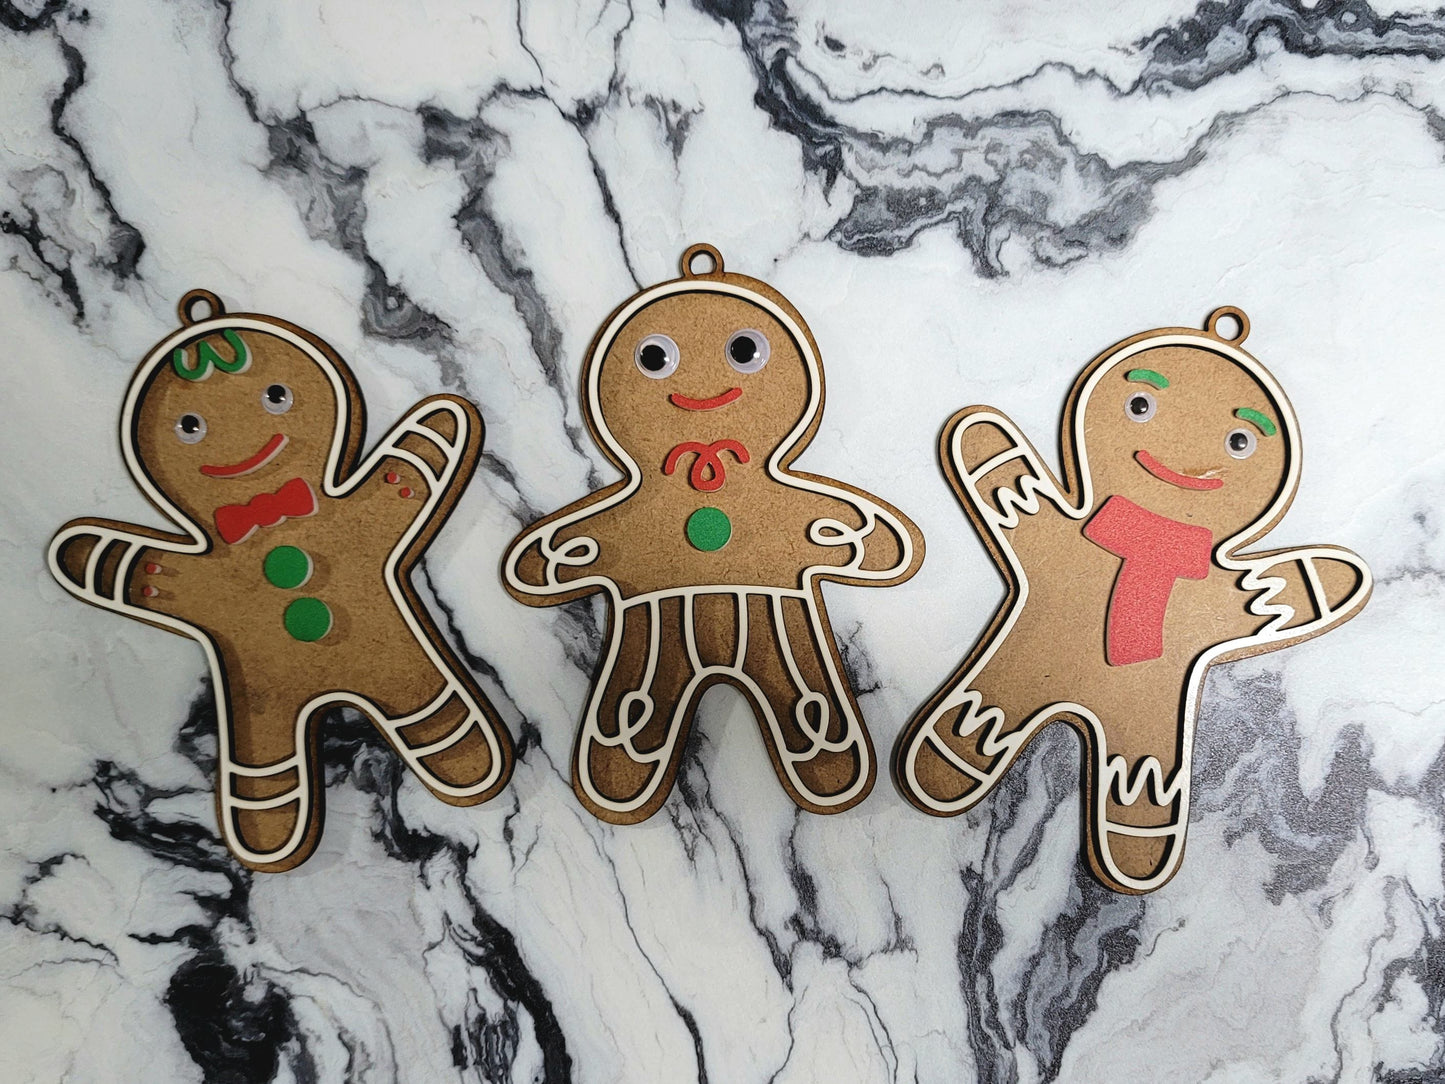 Gingerbread ornaments